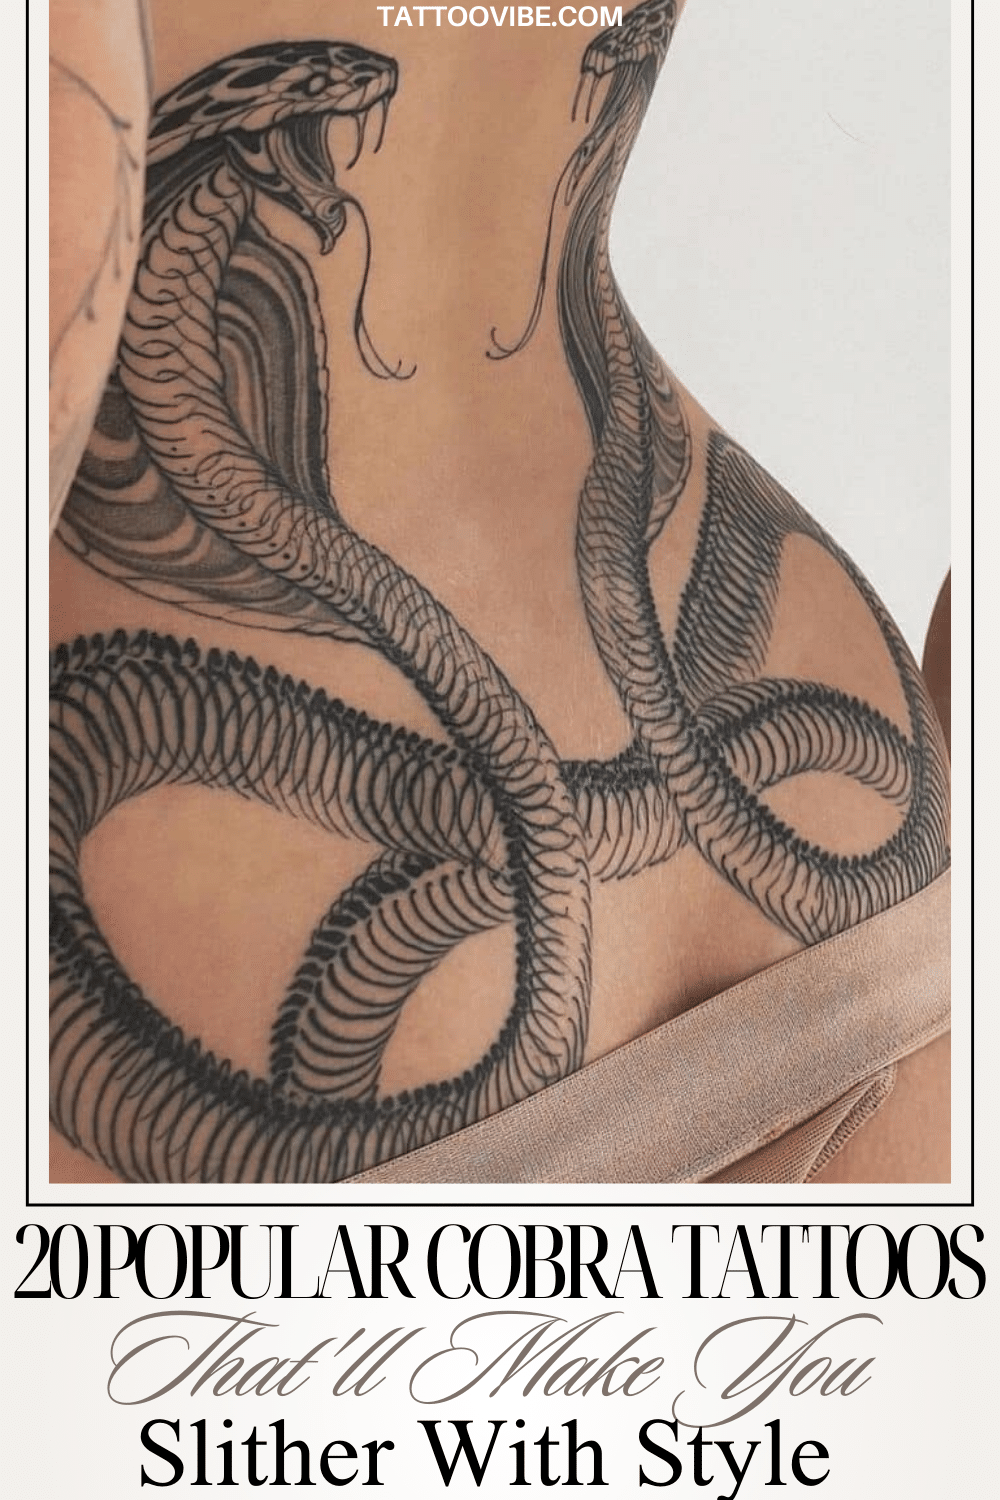 Tatouages Cobra populaires qui vous feront glisser avec style